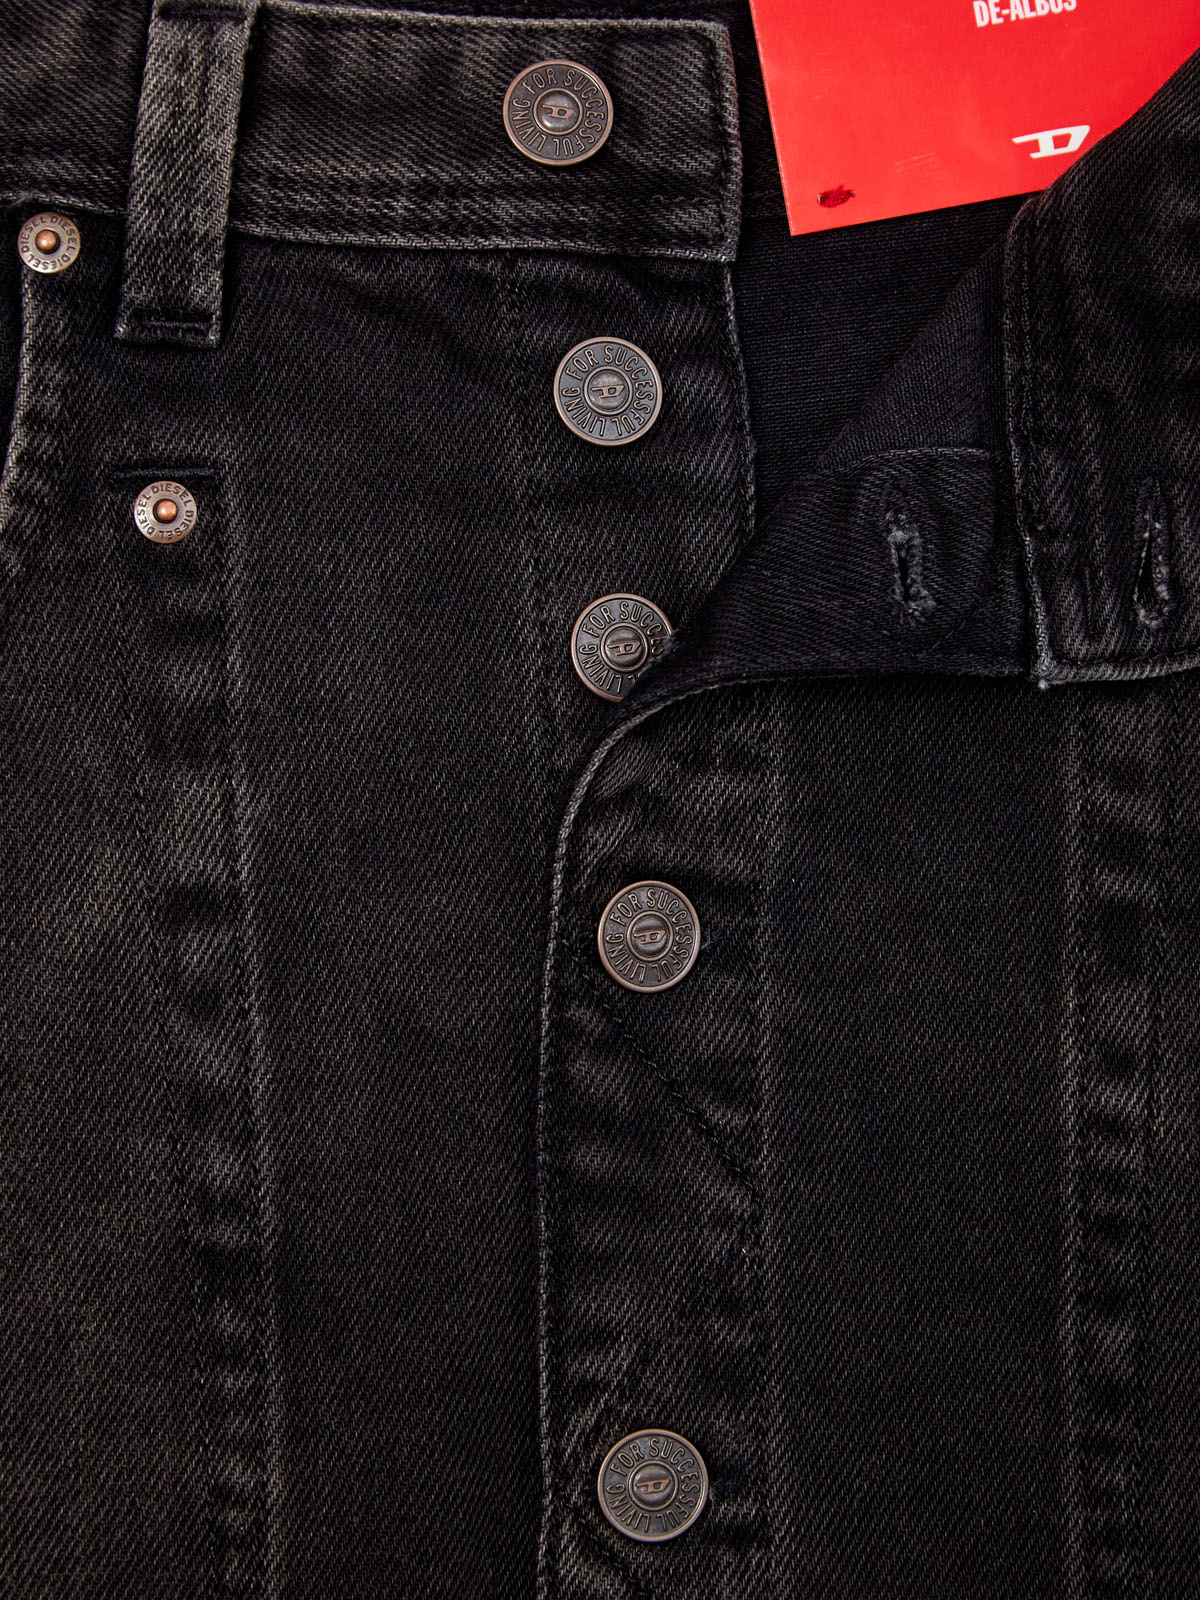 Джинсовая юбка De-Albus с выбеленным эффектом DIESEL, цвет черный, размер S;M;XS;S - фото 6